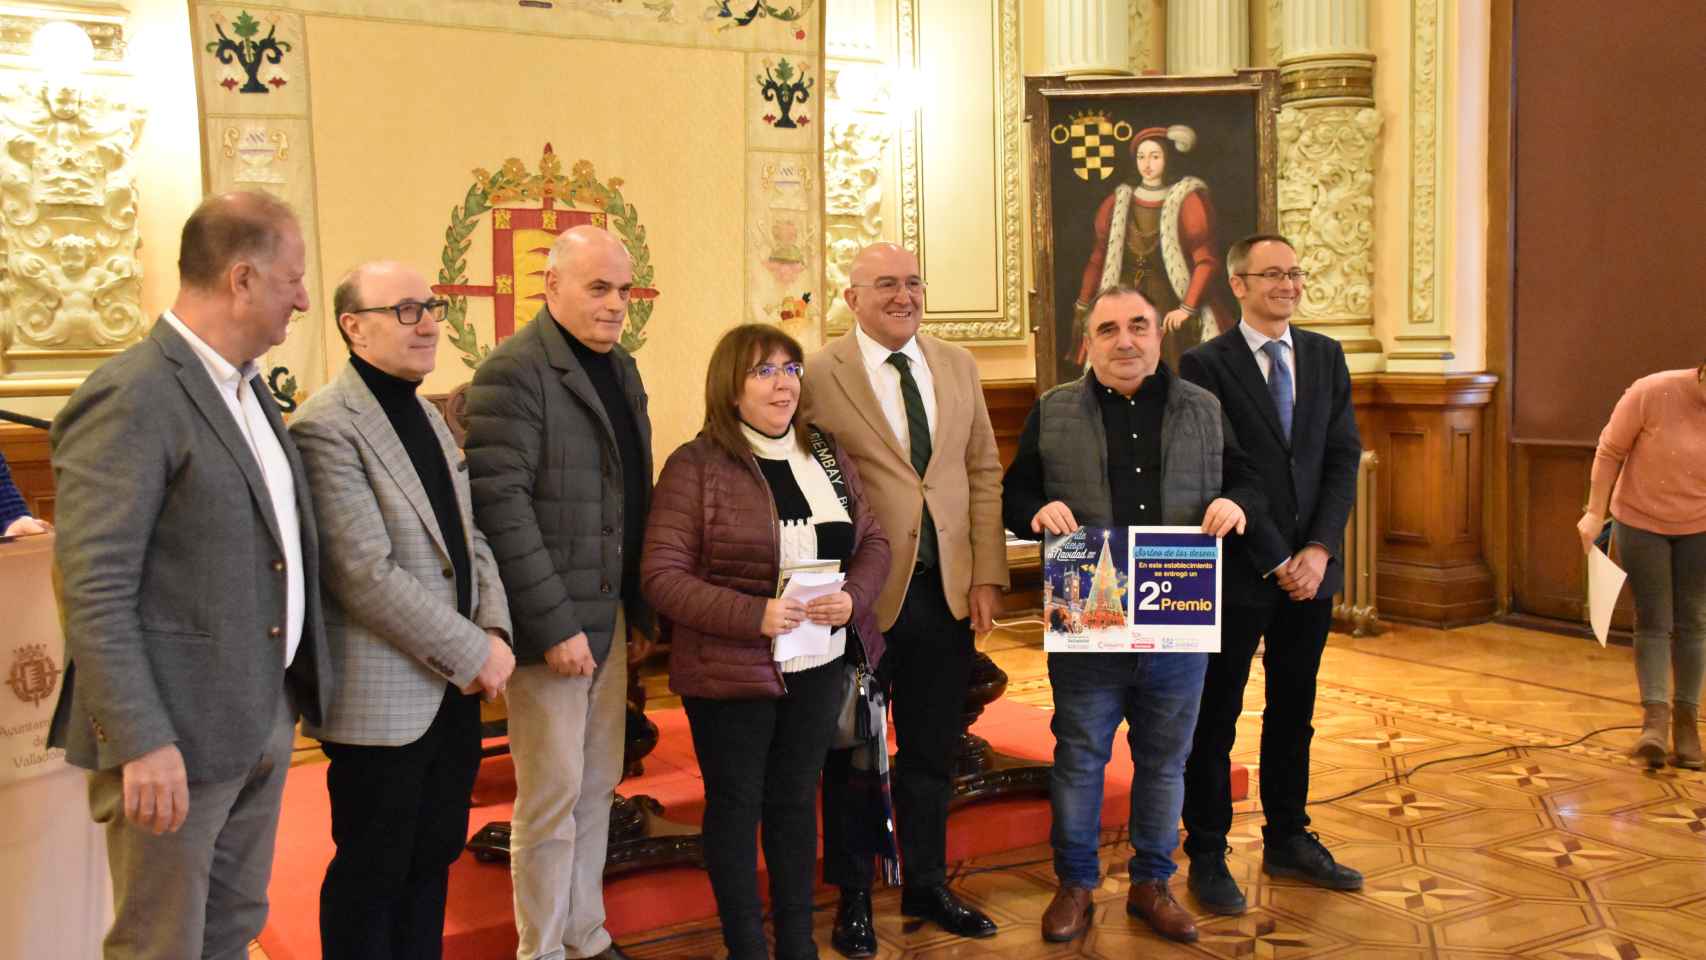 18.000 euros en premios repartidos en Valladolid para gastar en el comercio local